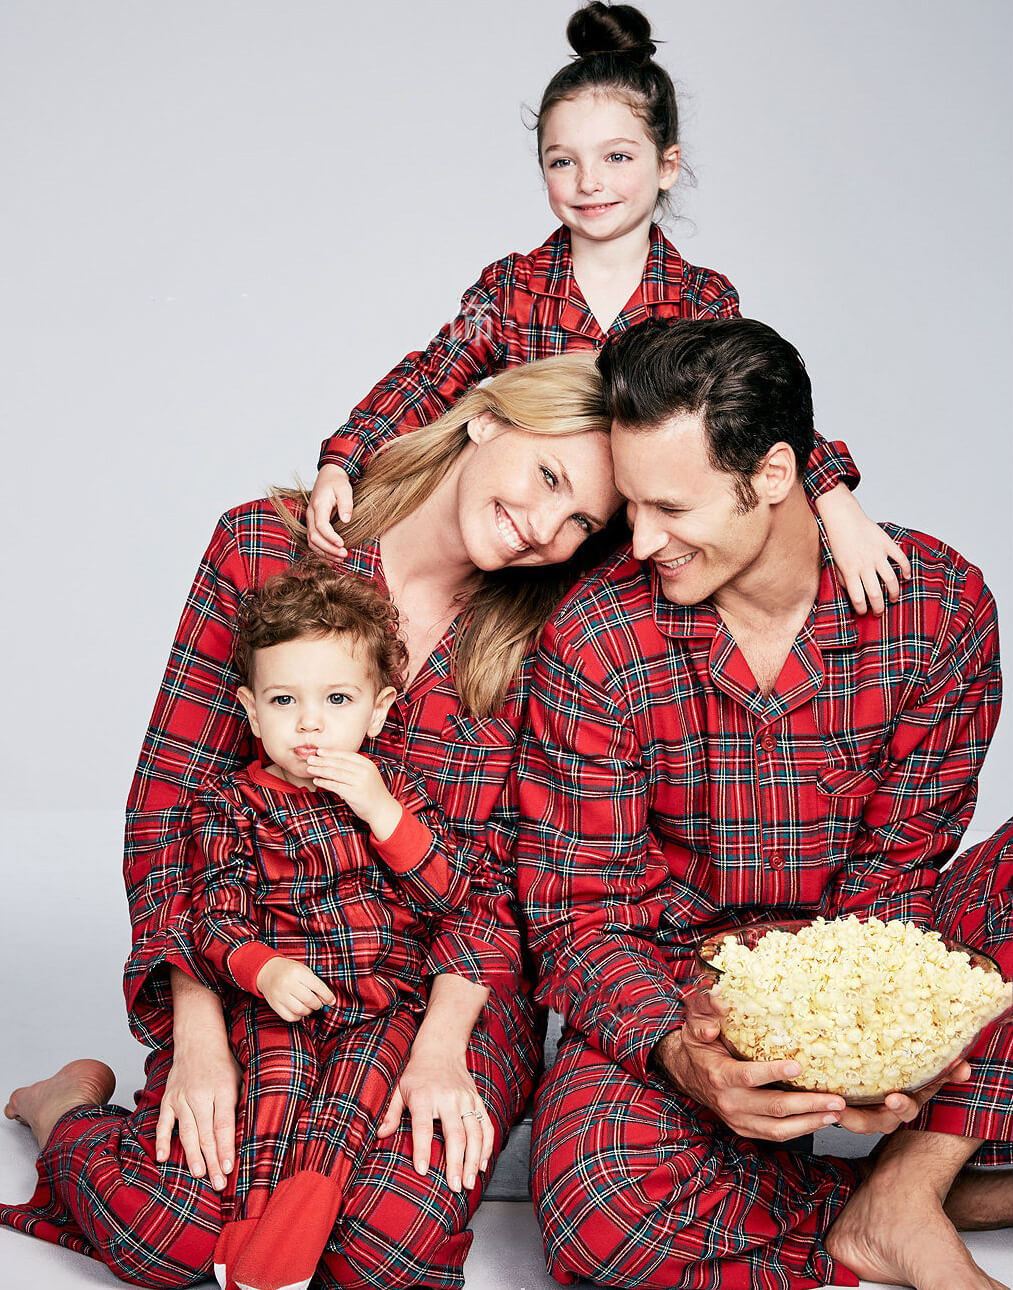 Joulun ruudullinen rintalappu perheille sopivat pyjamasetit